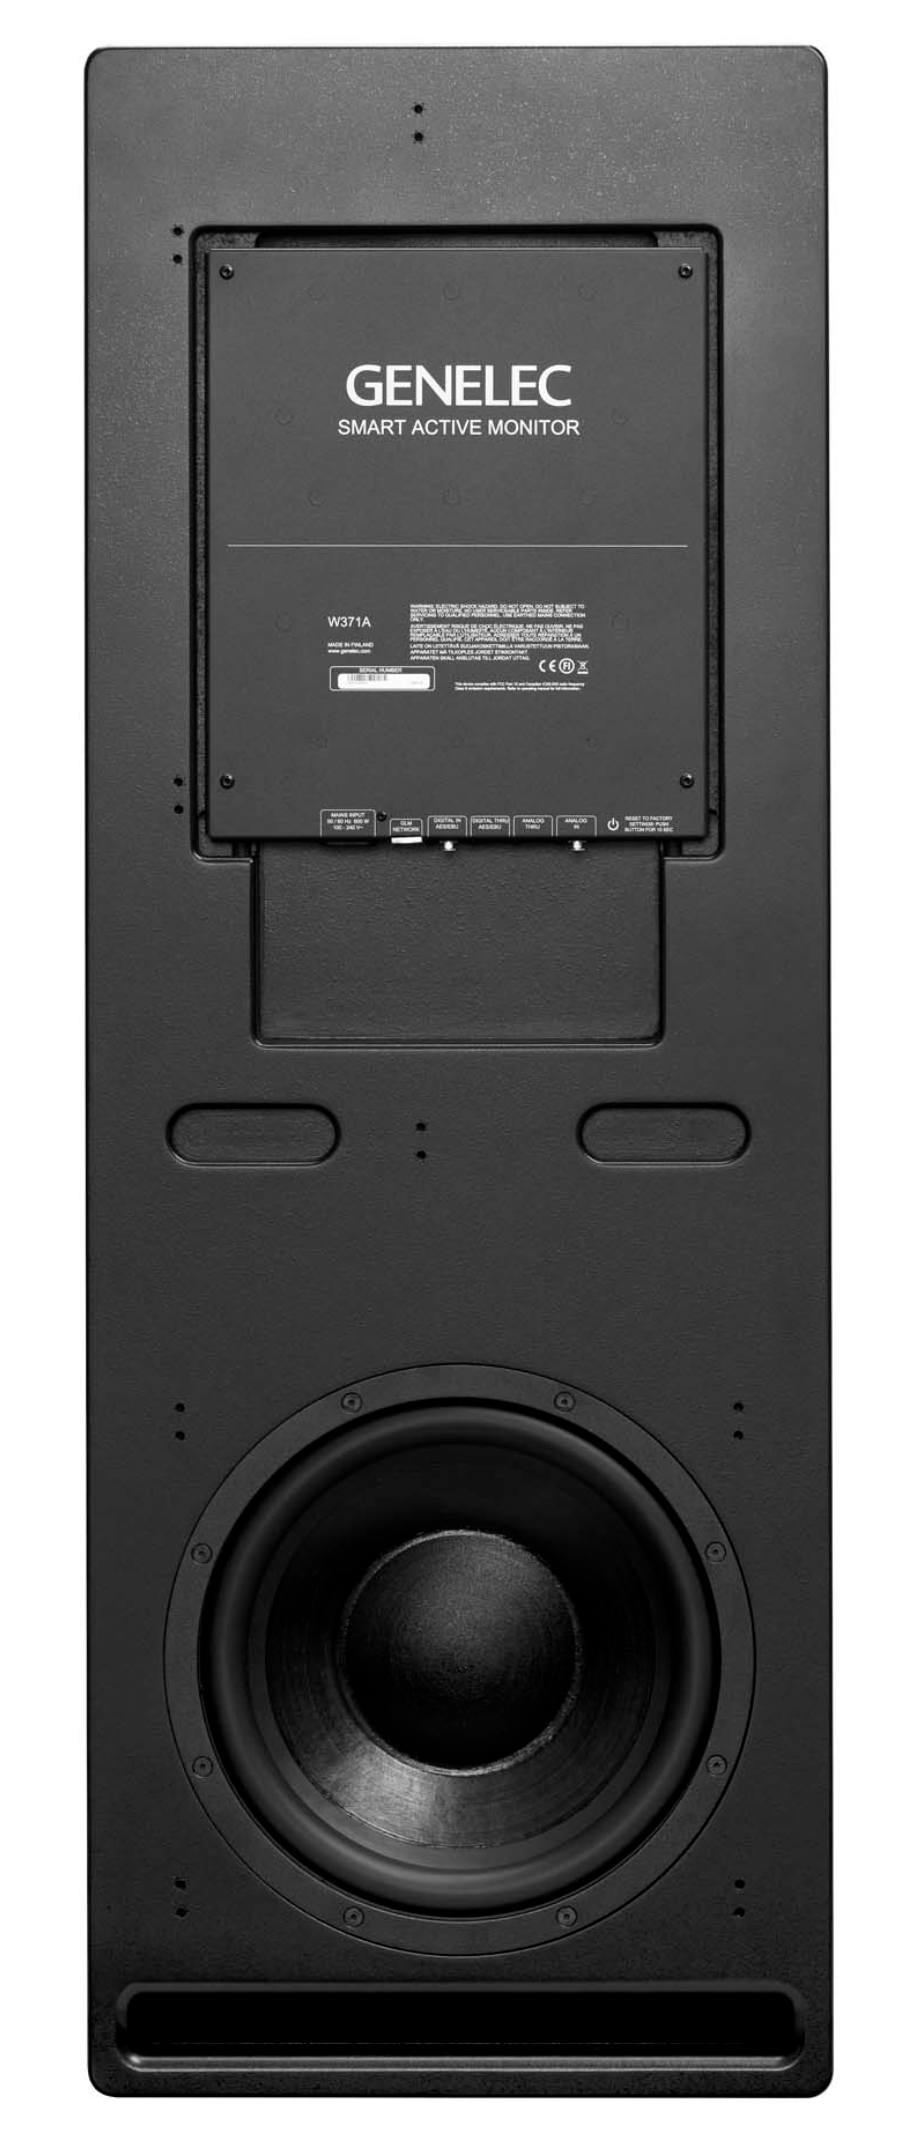 Genelec W371A SAM™ Woofer System in Black. Back image